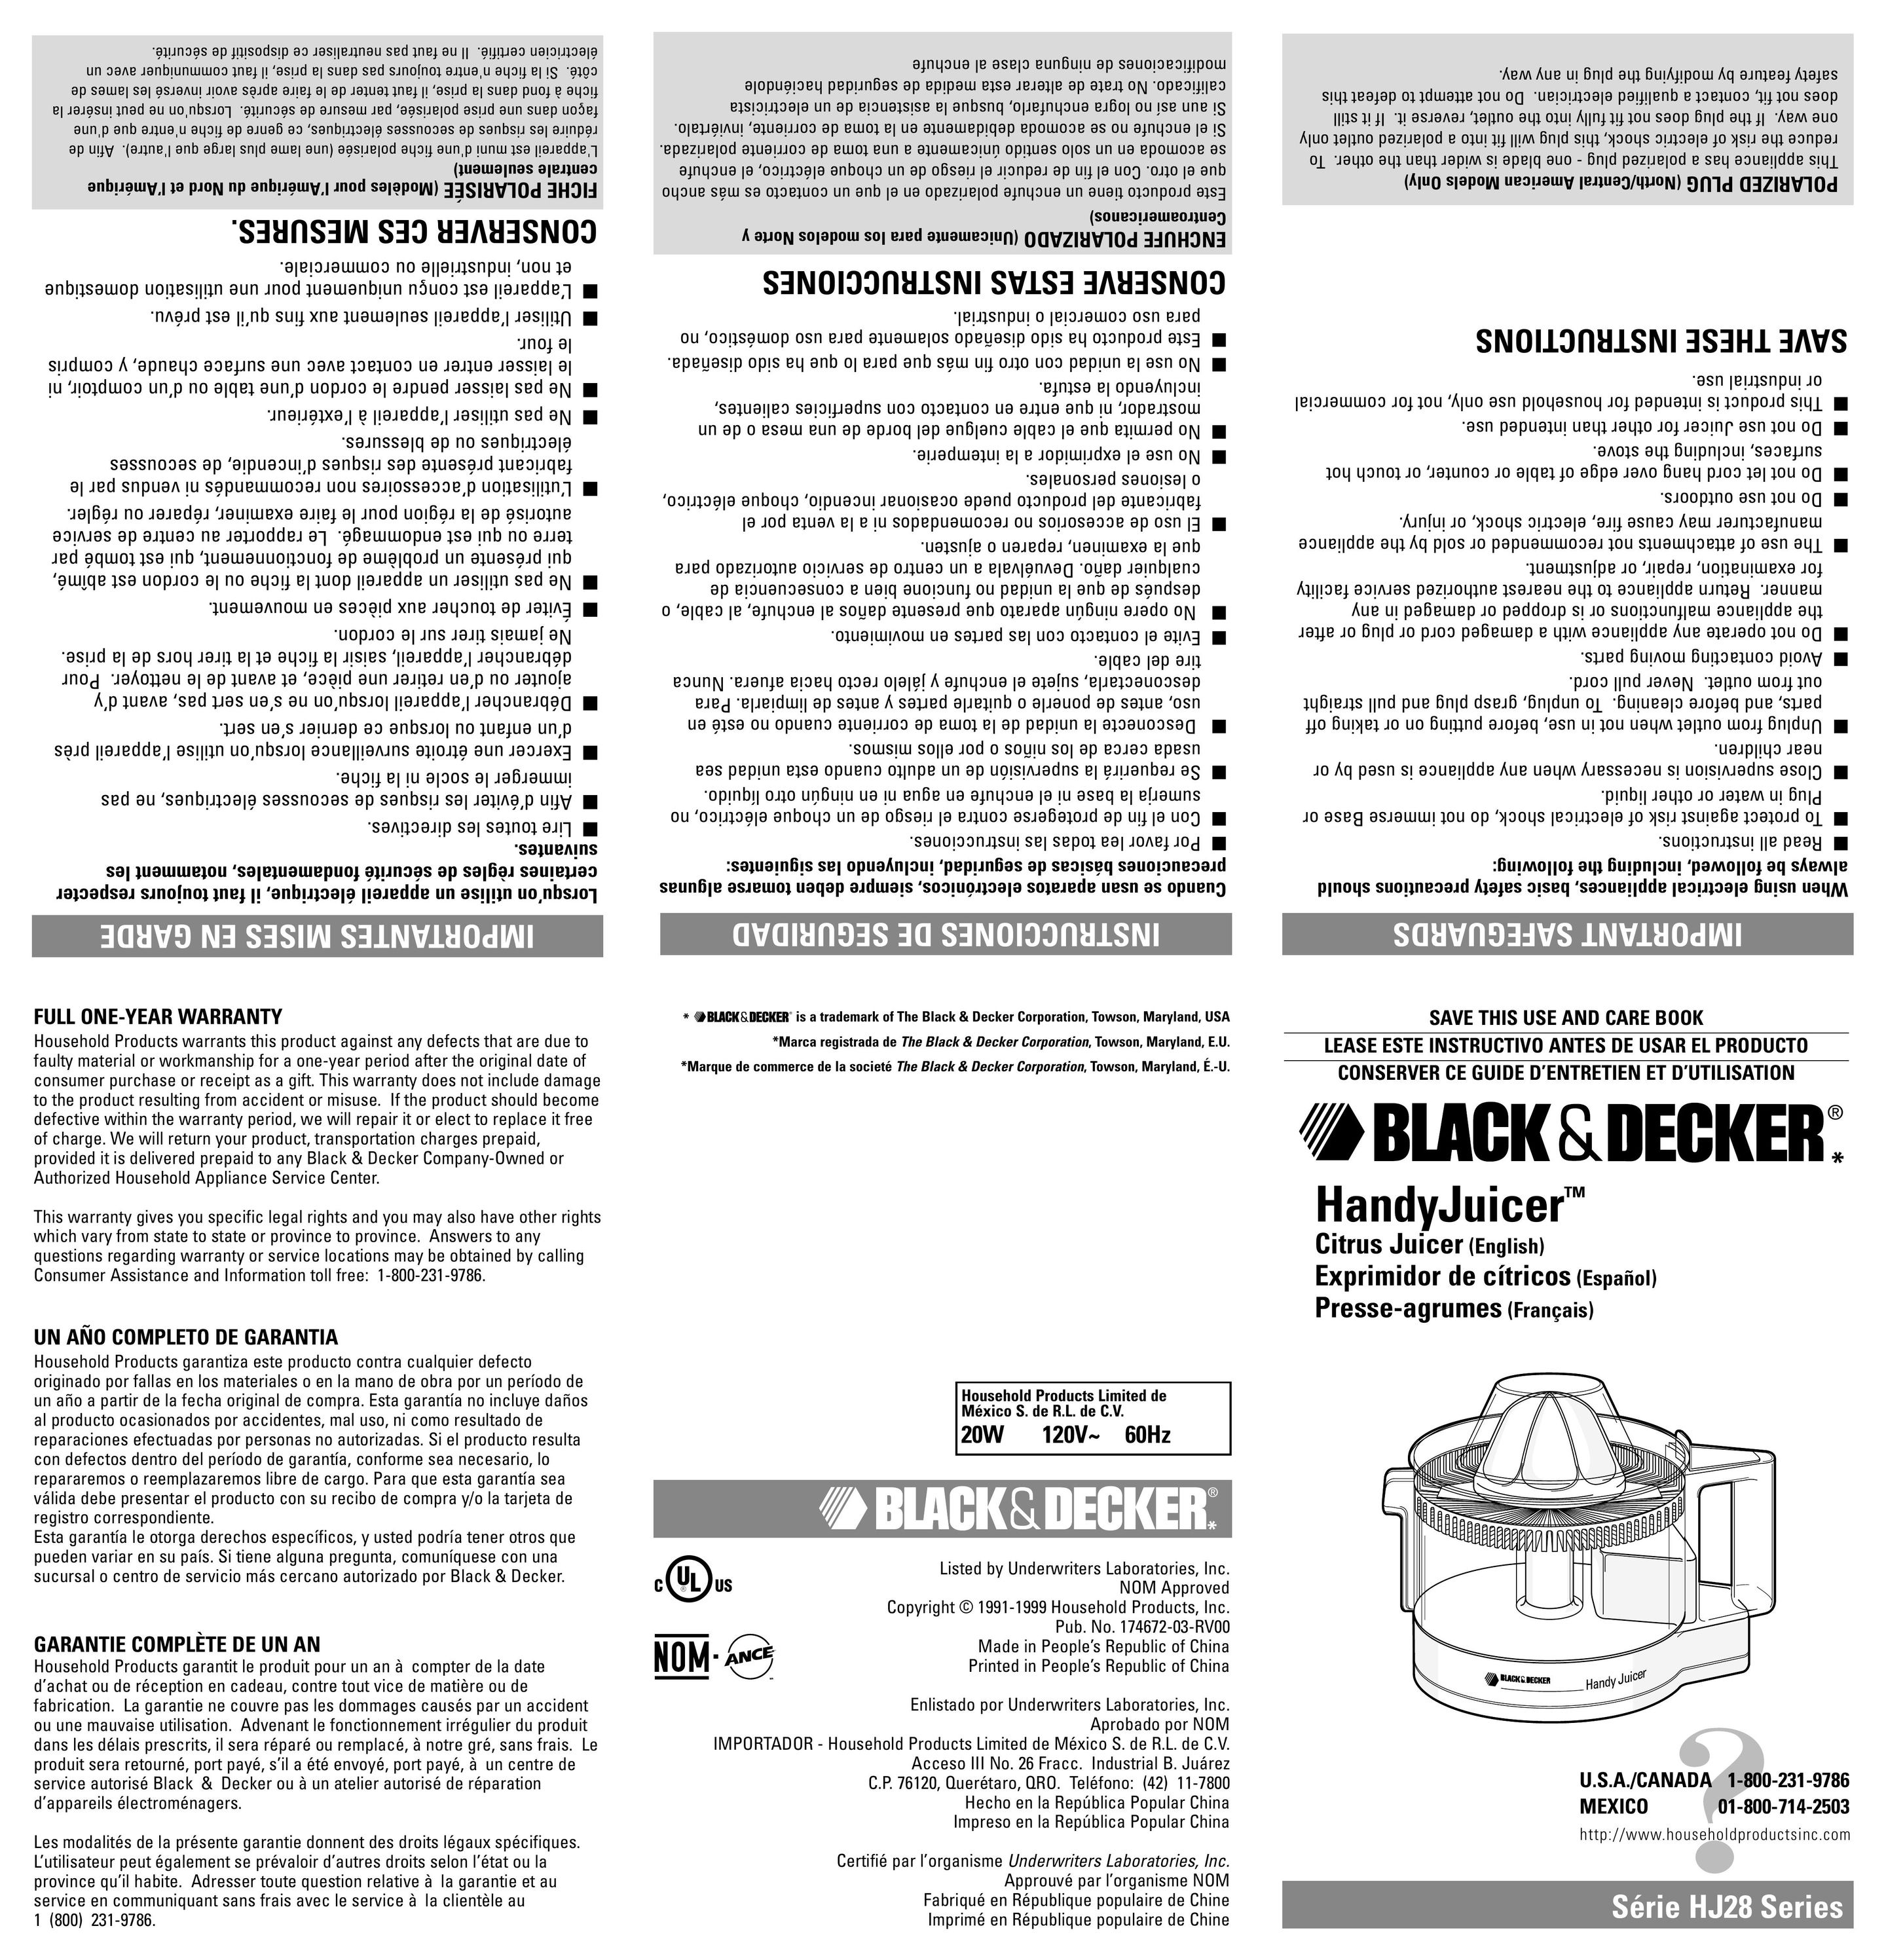 Black & Decker HJ28 Juicer User Manual